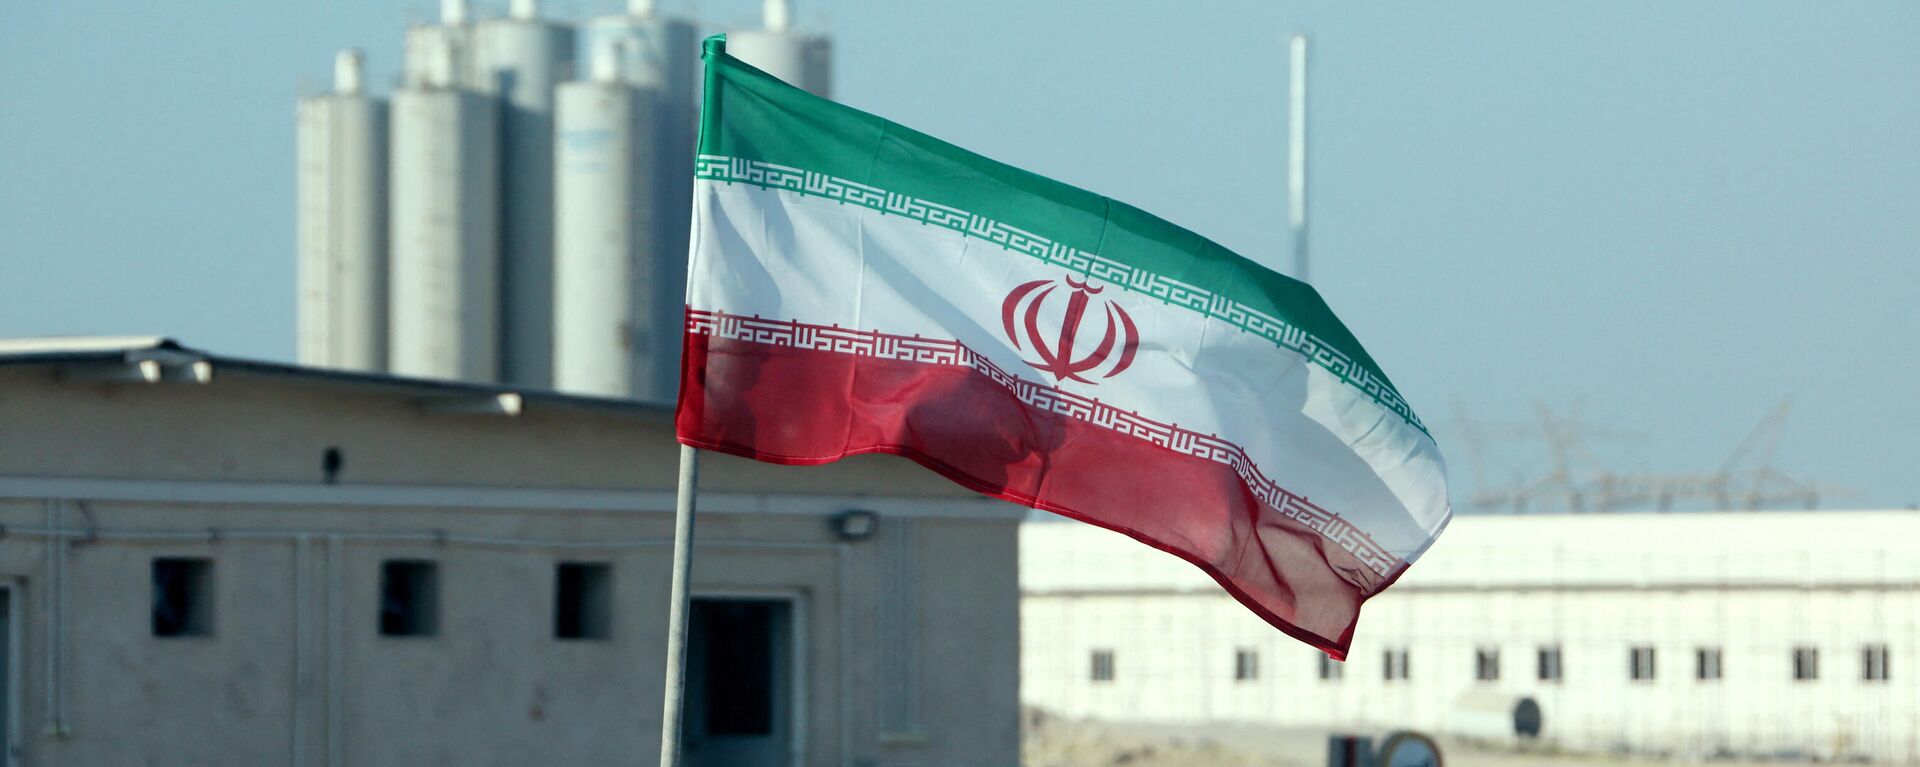 La bandera de Irán frente a una planta nuclear (archivo) - Sputnik Mundo, 1920, 13.03.2022